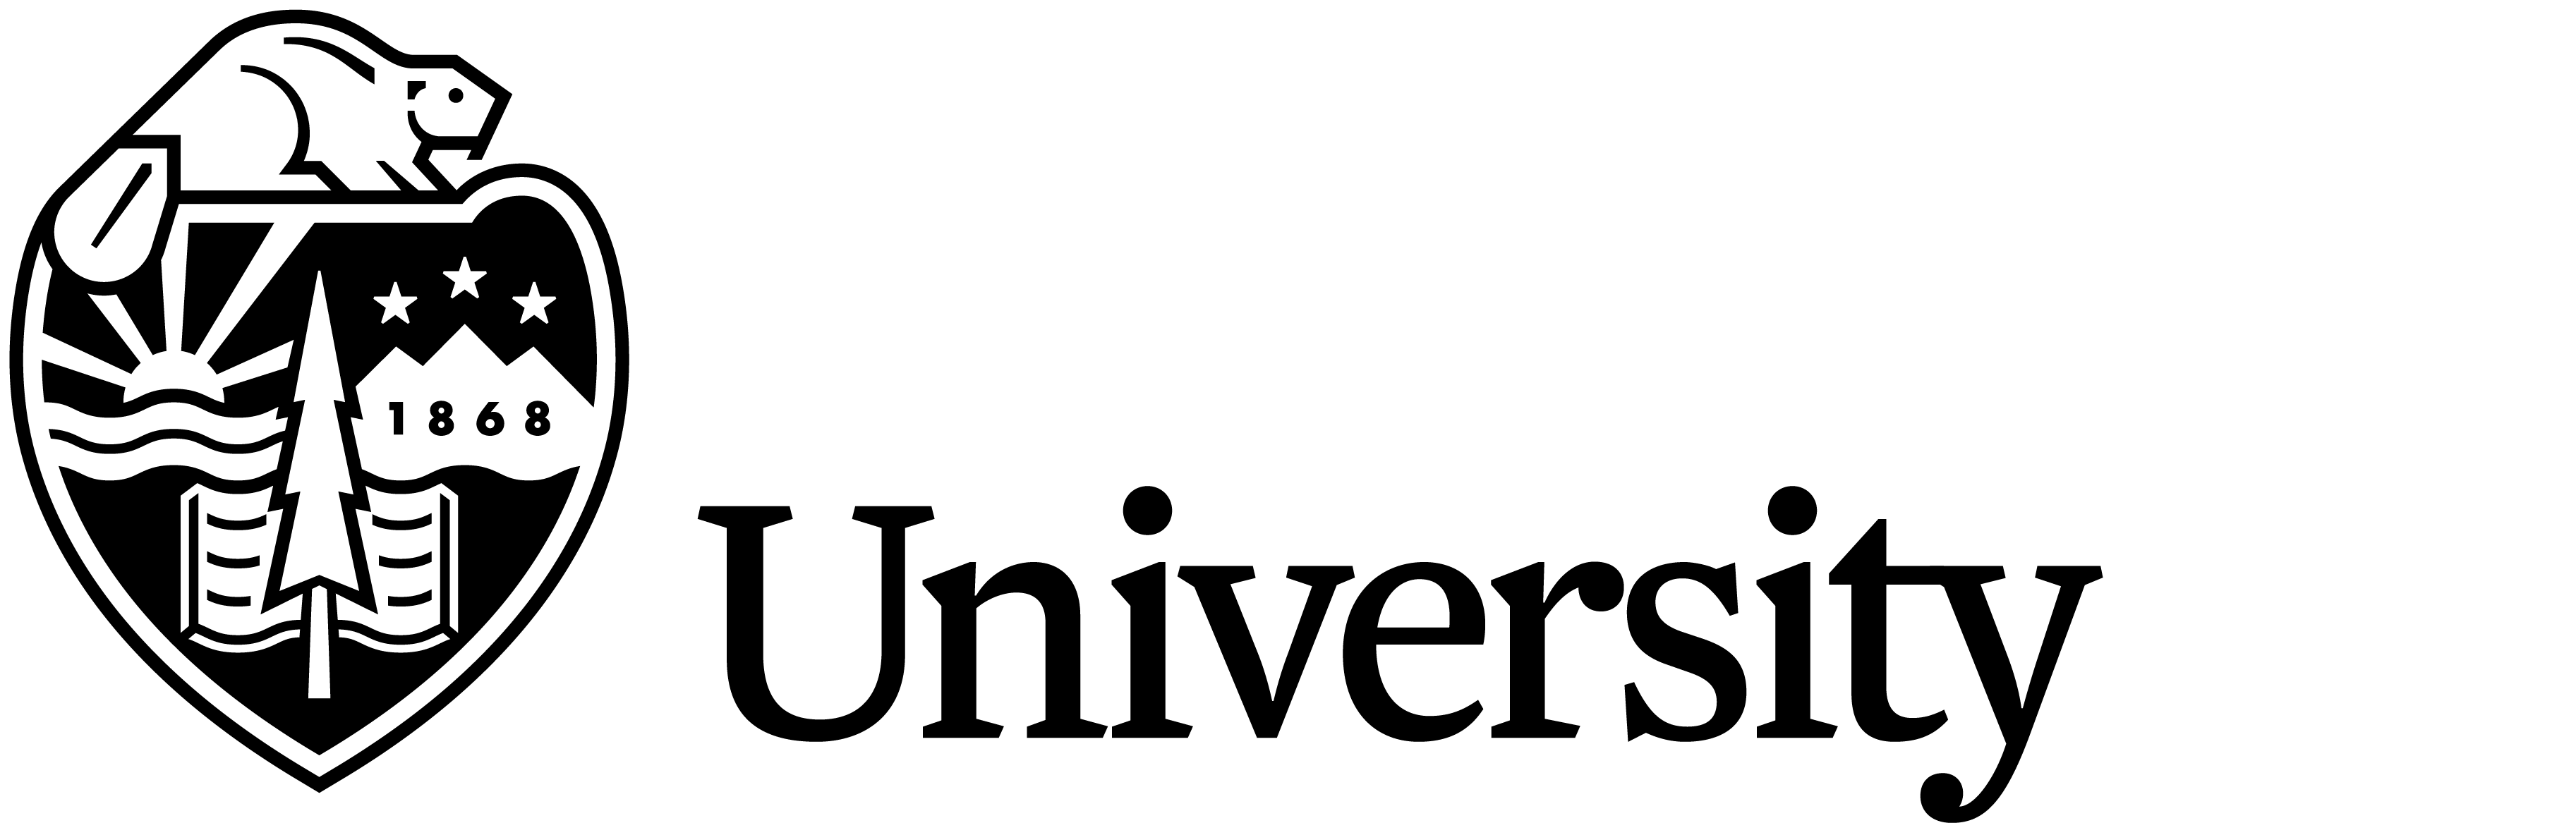 Oregon State University - Oregon State University Logo (3651x1167), Png Download